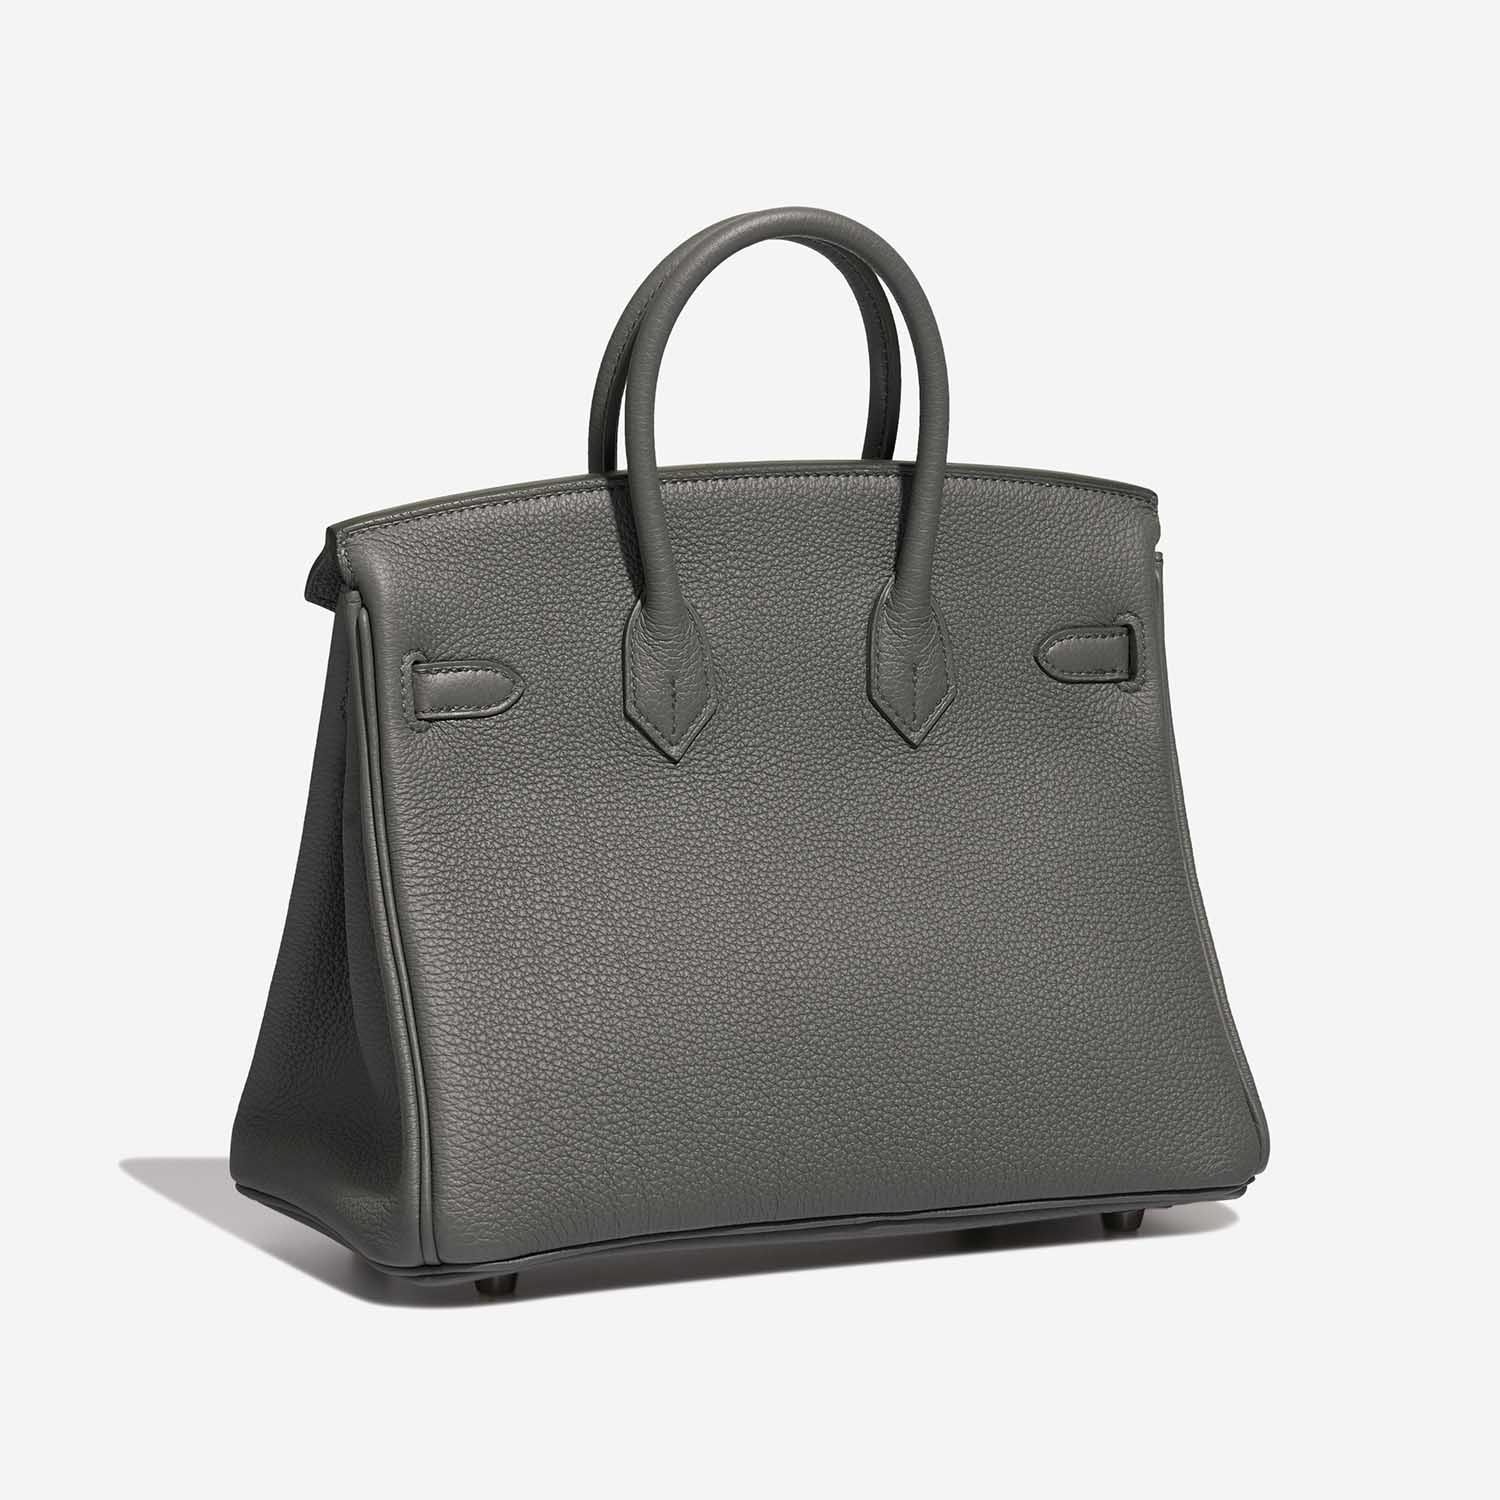 Hermès Birkin 25 VertAmande Side Back | Verkaufen Sie Ihre Designer-Tasche auf Saclab.com